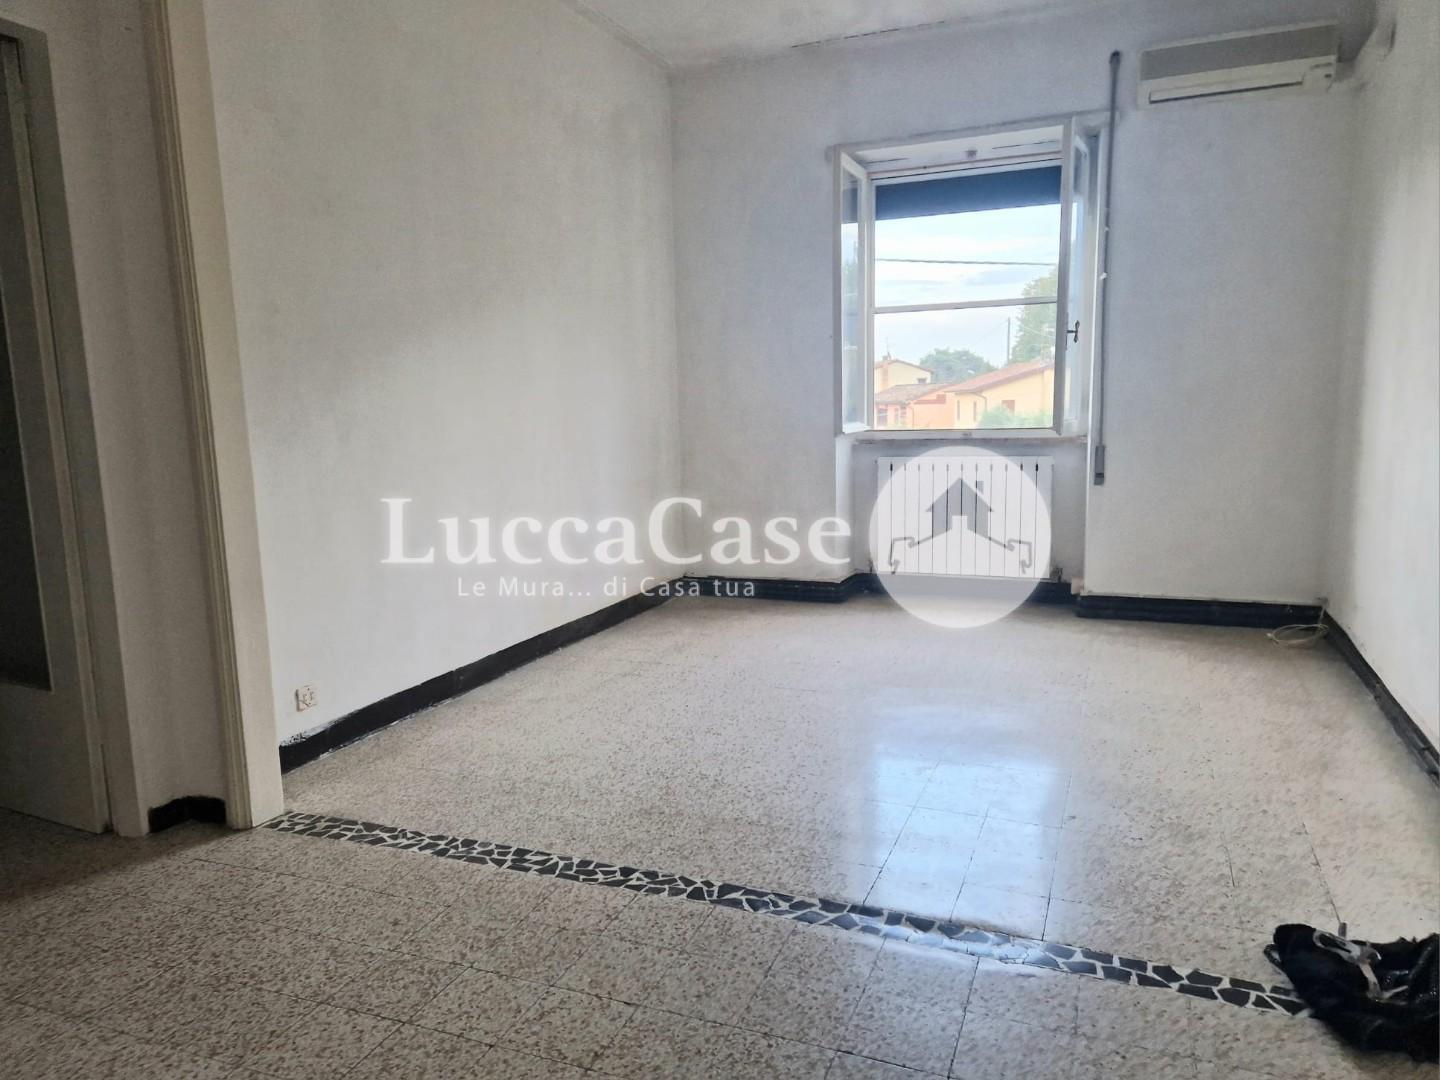 Appartamento in vendita a Capannori, 4 locali, prezzo € 115.000 | PortaleAgenzieImmobiliari.it